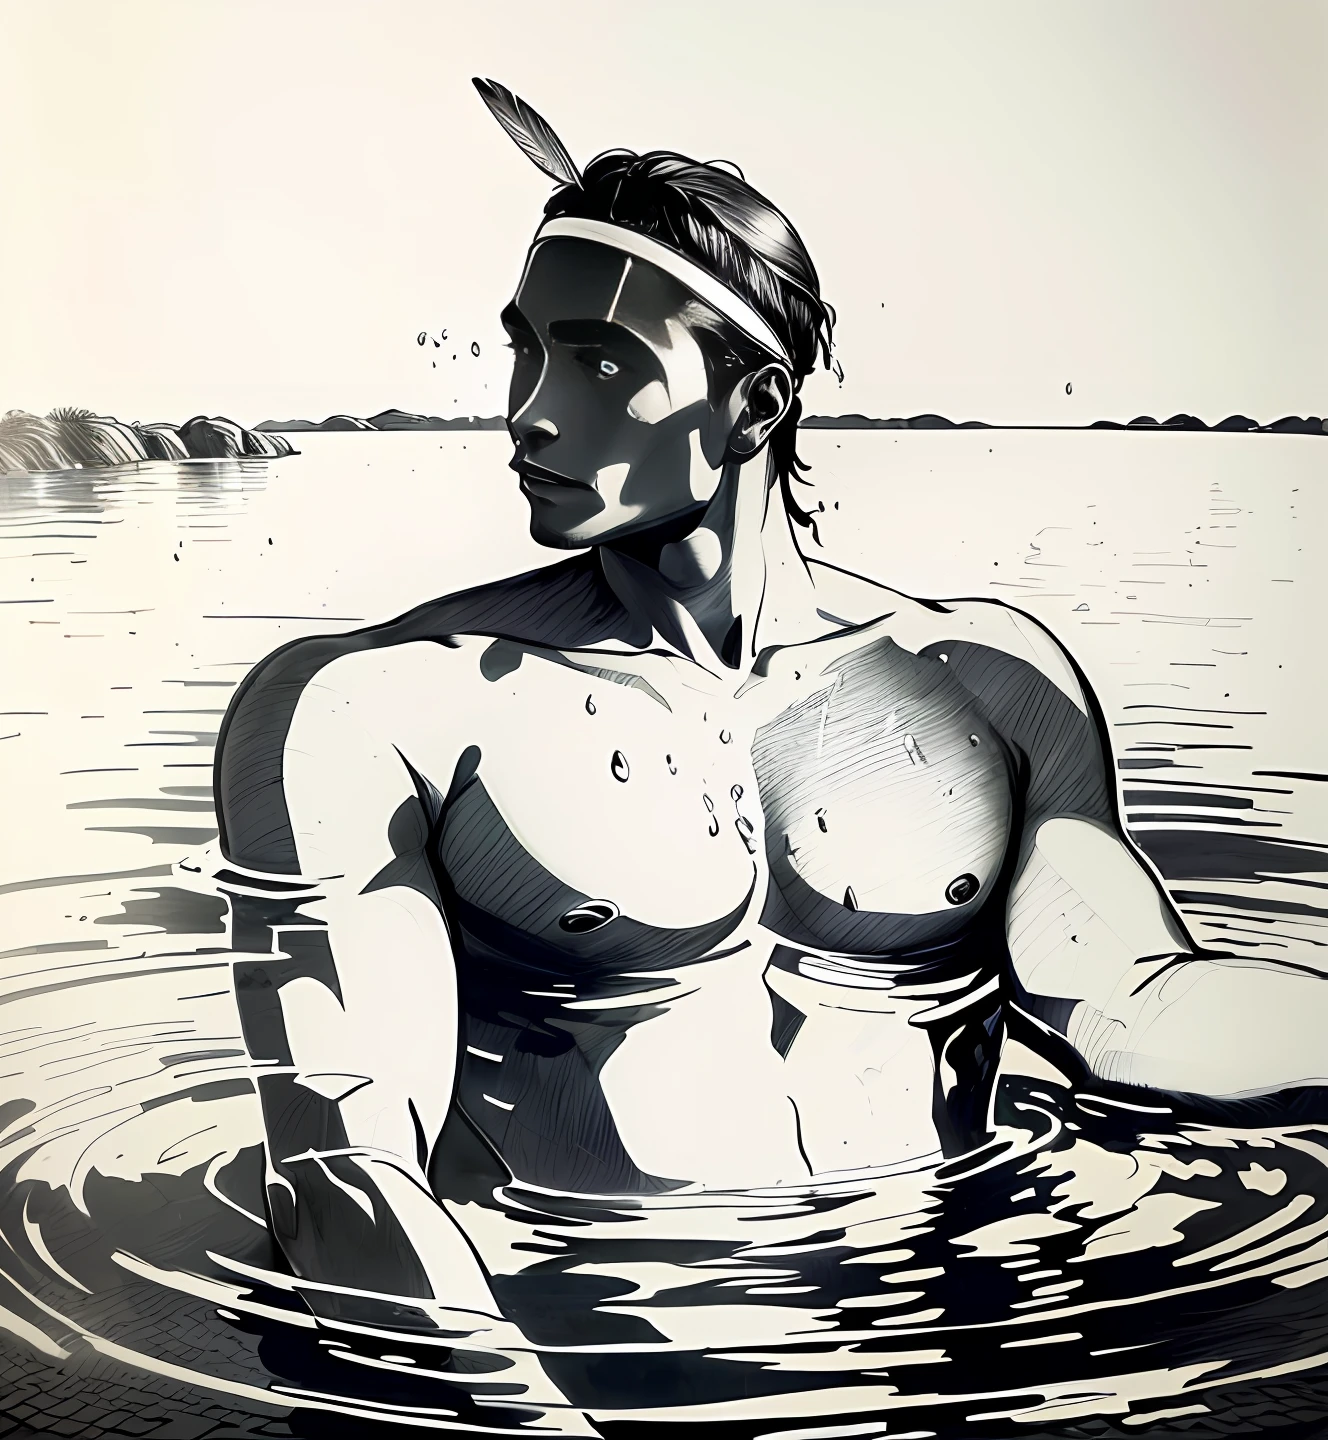 一個戴著頭飾的人在水中的圖畫, 罗克韦尔·肯特, 身體在水中, 作者：威拉德·穆林, 人物一半在水里, 從水中浮現出來, 通過埃默里·道格拉斯, 约翰·布莱尔, 超现实的木刻雕刻, 站在水池裡, 原住民, 水從他身上滴下來, 作者：倫納德·朗, 作者：罗伯特·布莱登, 阴影交叉线